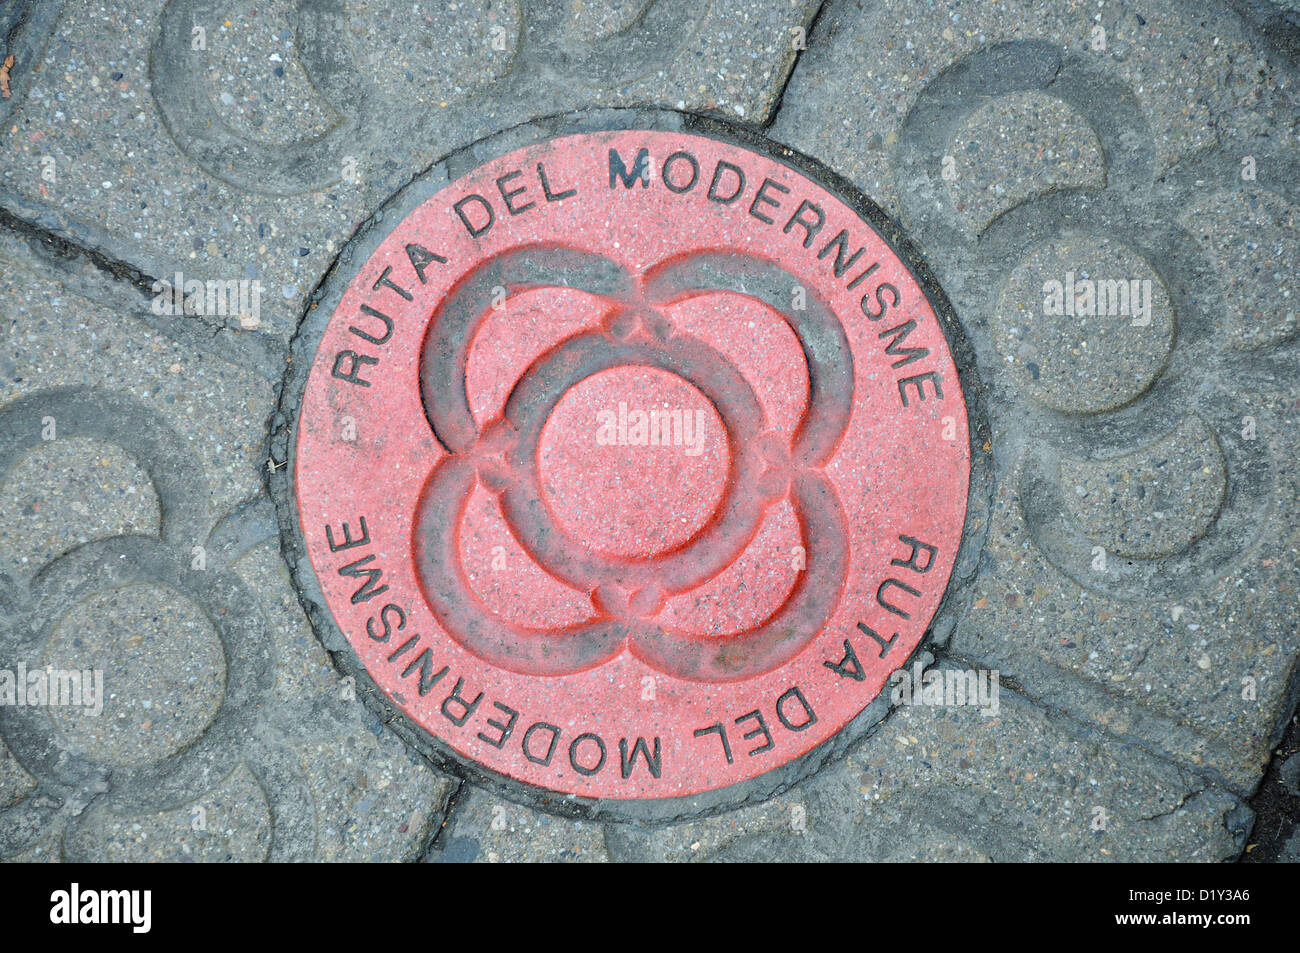 Spain, Catalonia, Barcelona. Ruta del Modernisme / Art Nouveau Route. Plaque built into pavement Stock Photo